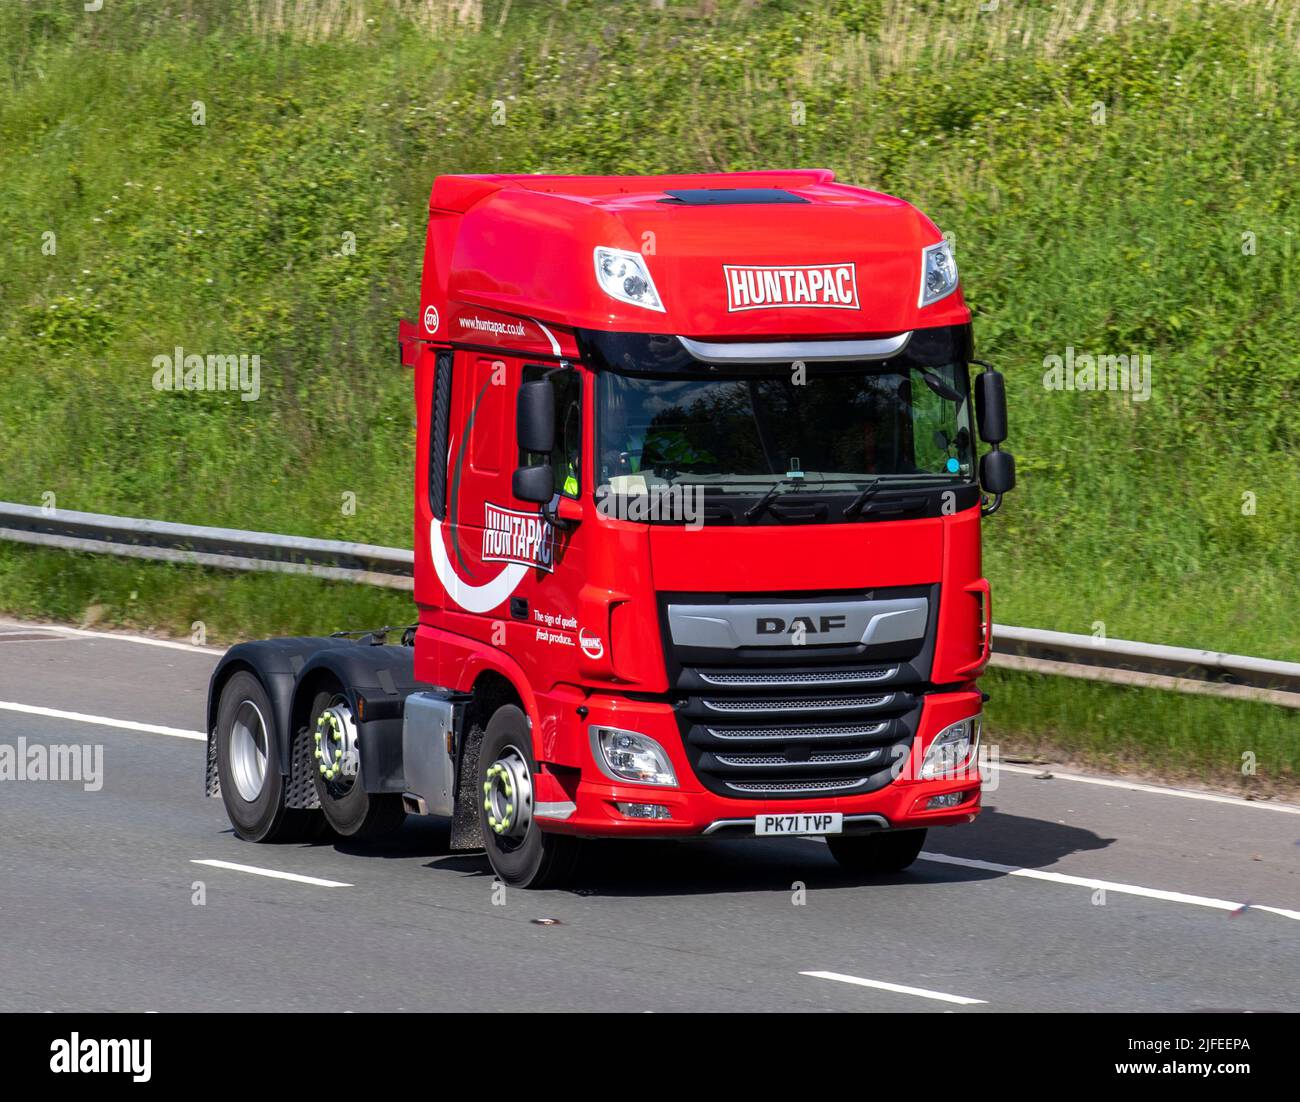 HUNTAPAC Red DAF 12902cc Diesel Tractor Unit; Fahren auf der M6 Motorway, Manchester, Großbritannien Stockfoto